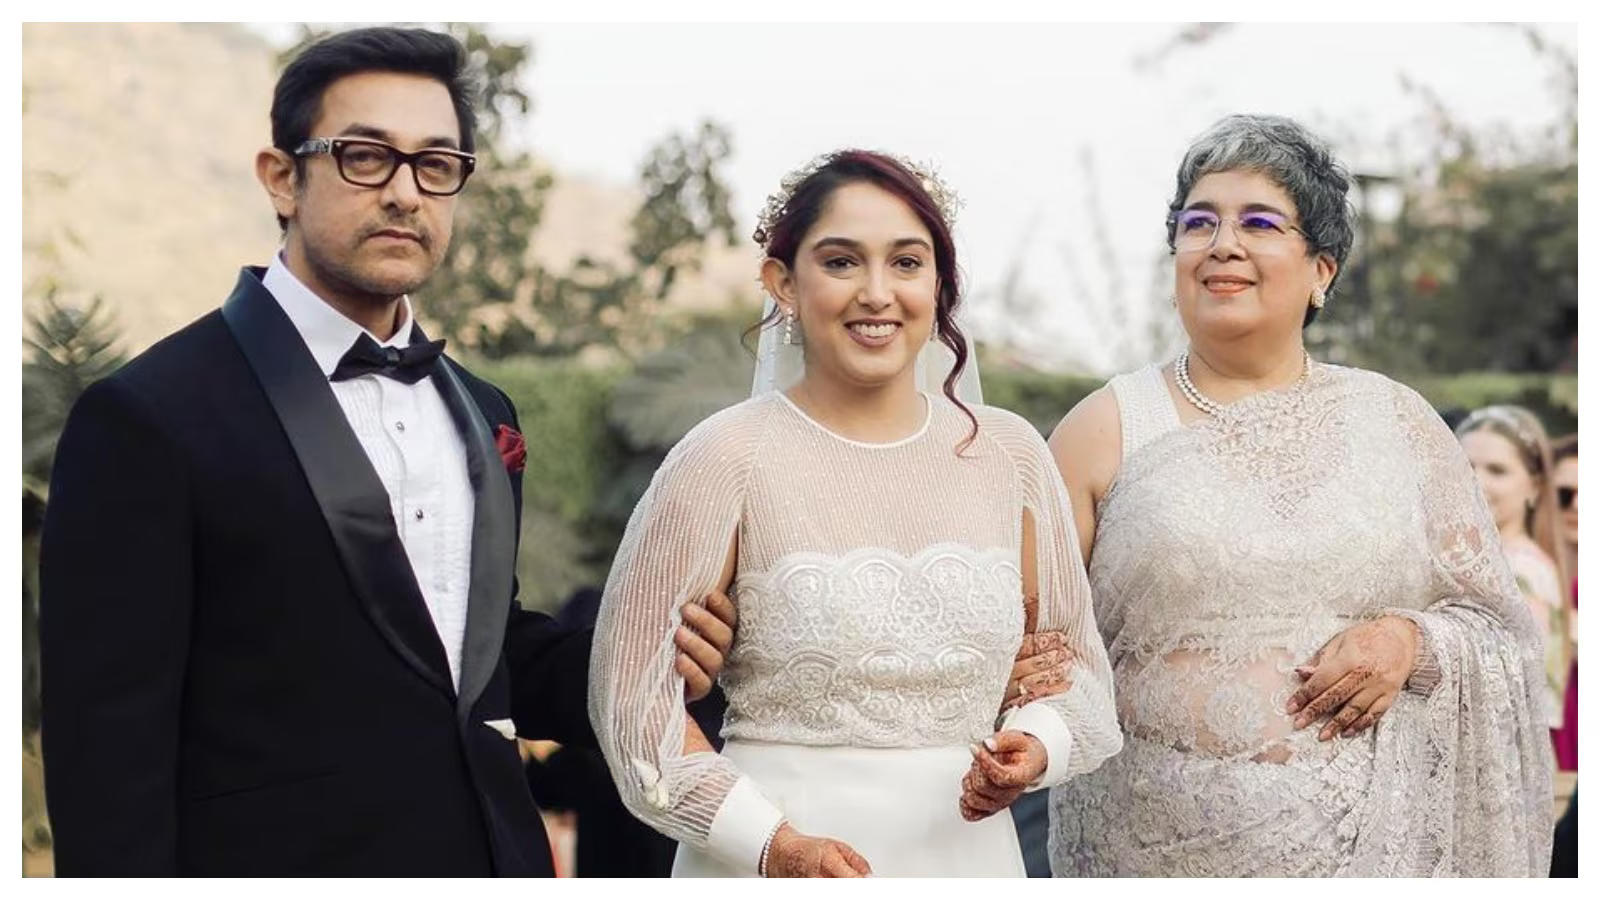 आमिर खान ने रोती हुई समधन को गले लगा कर करवाया चुप, वायरल हो रहा है शादी का अनदेखा वीडियो